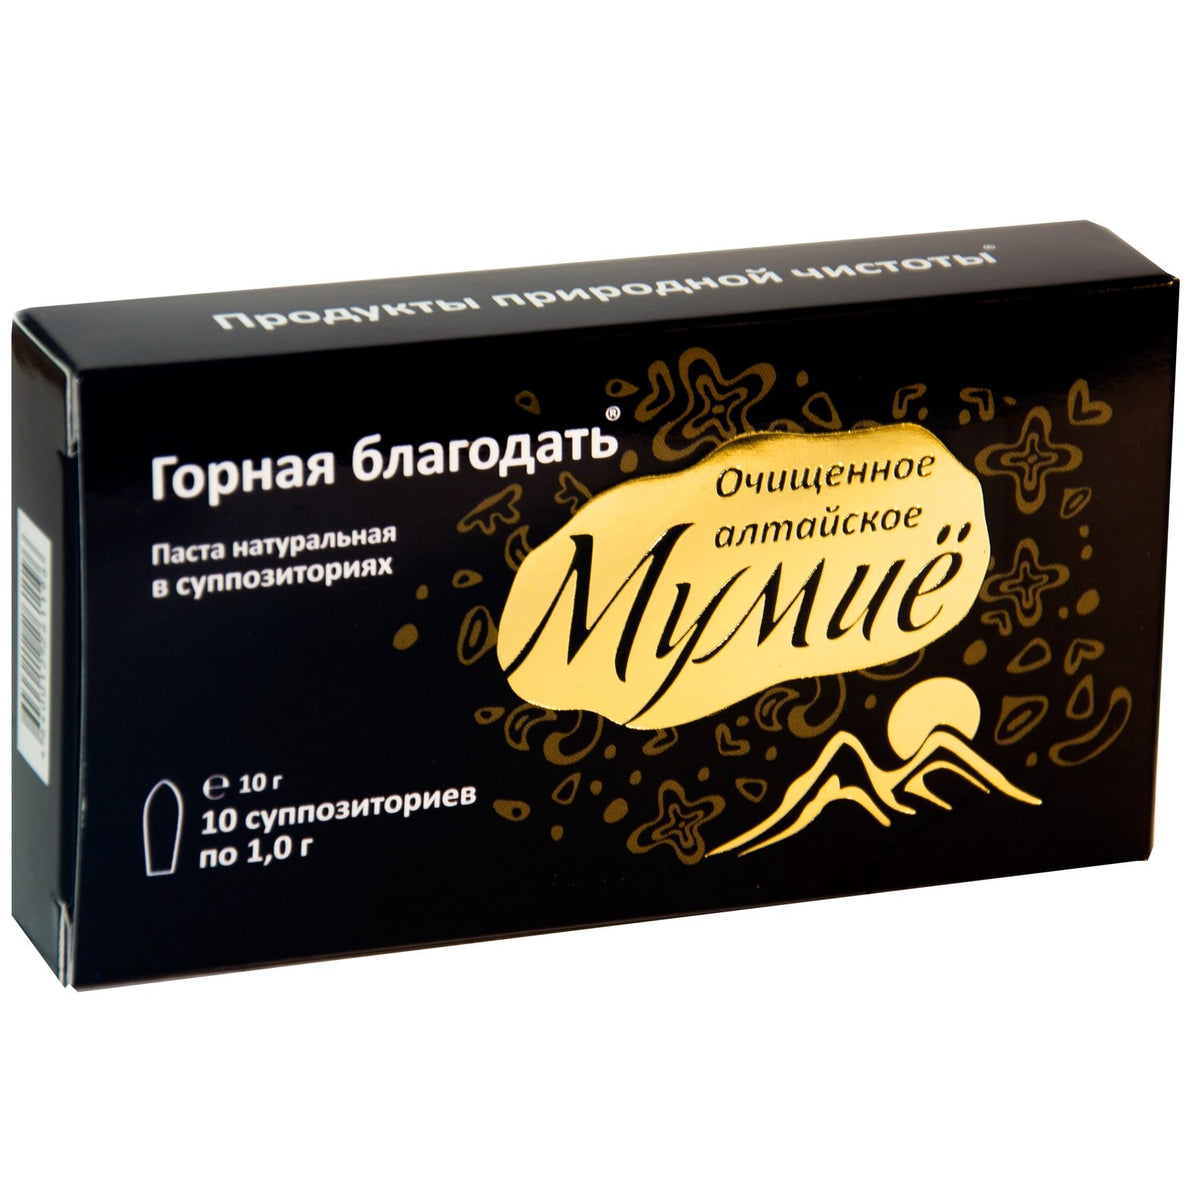 Baume crème Shilajit Pure Premium &#39;Mountain Grace&#39; sous forme de capsule cylindrique 10 grammes (10 unités x 1 gramme chacune)